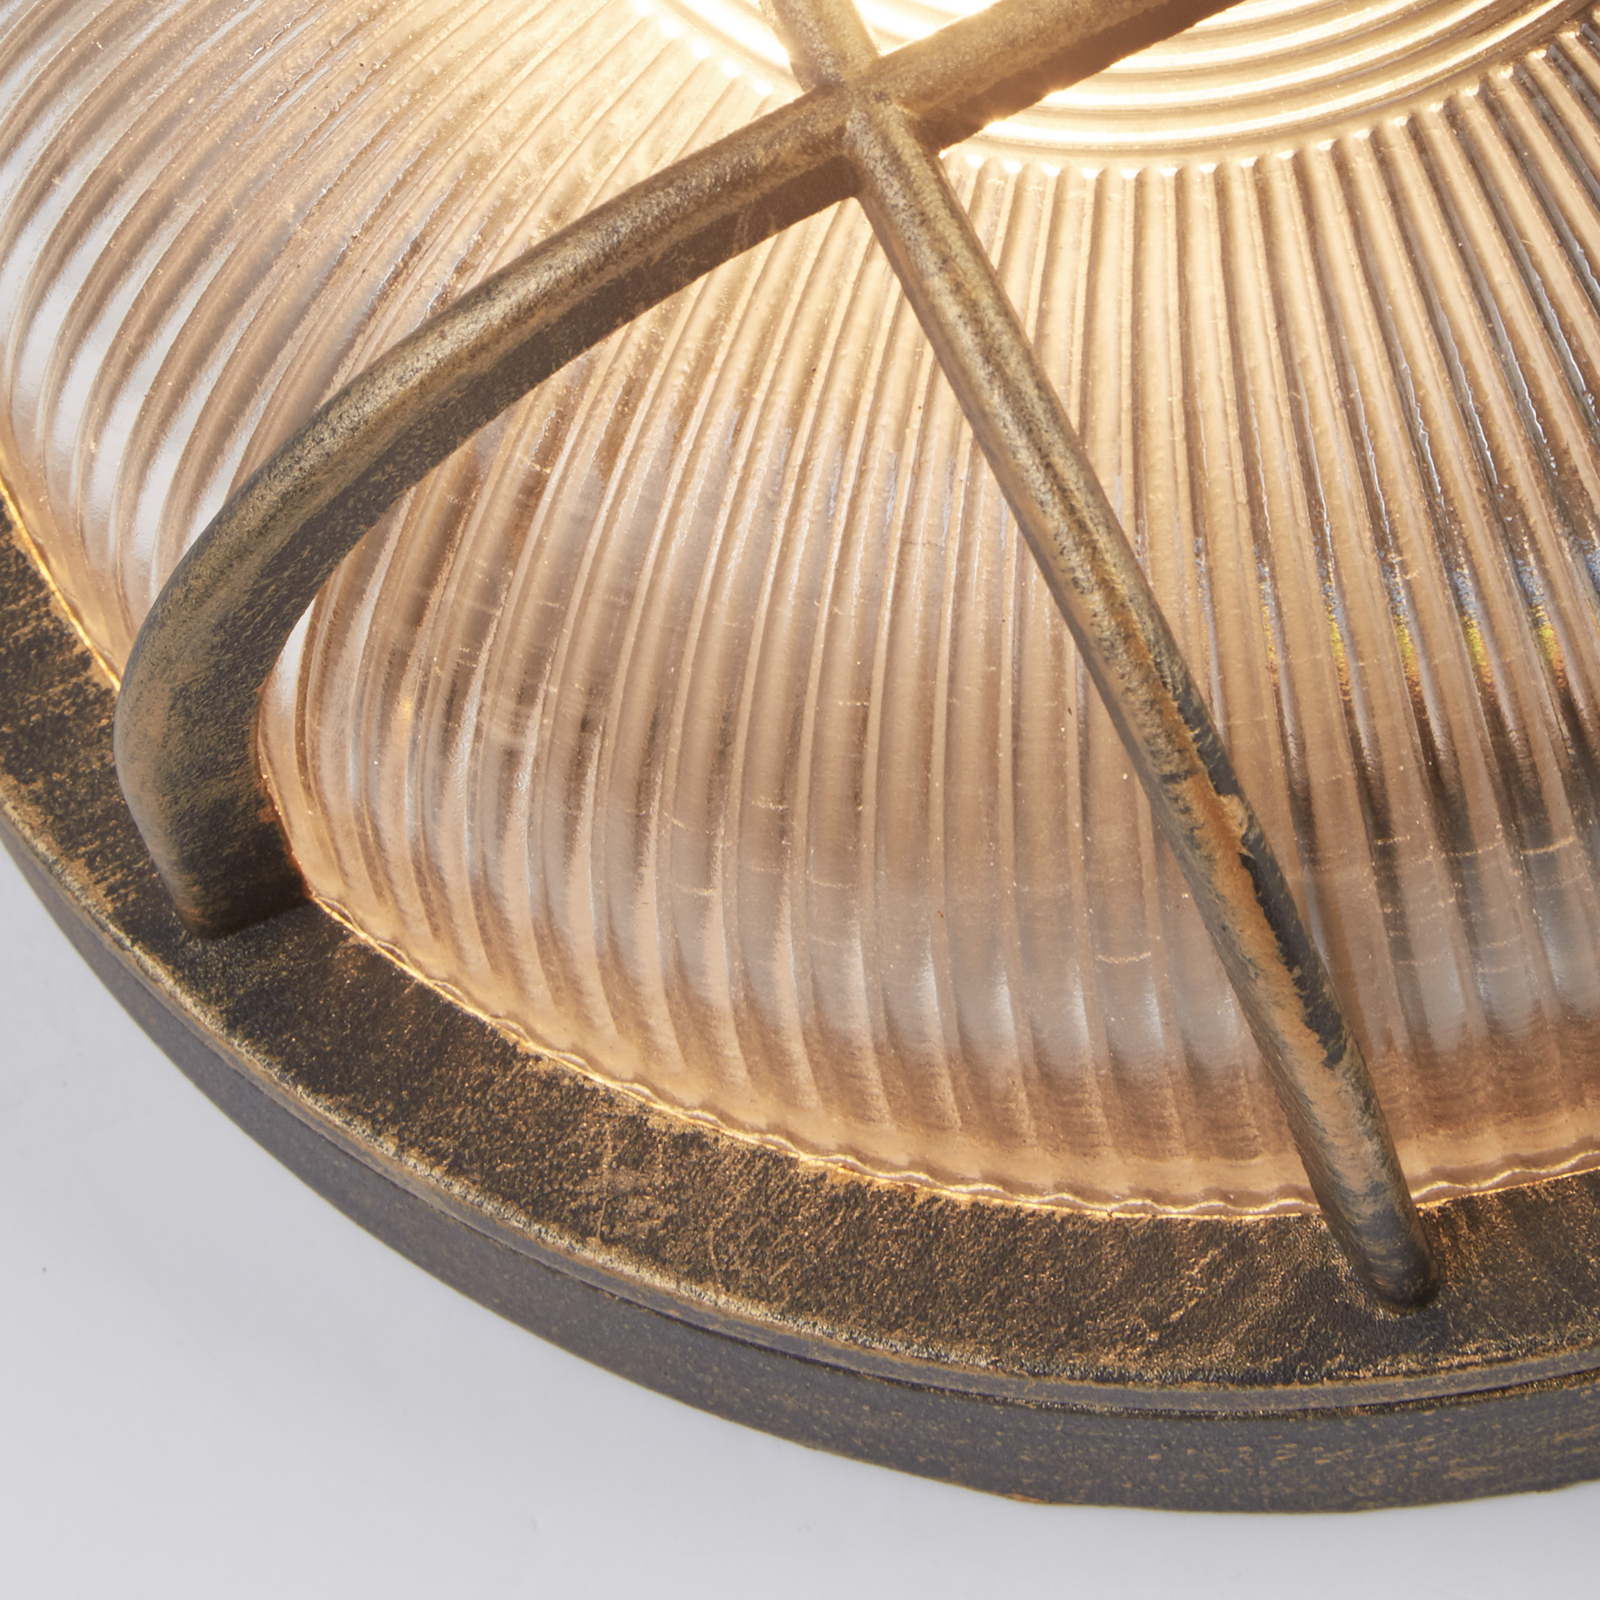 Lampa w stylu morskim Porto okrągła, czarno-złota